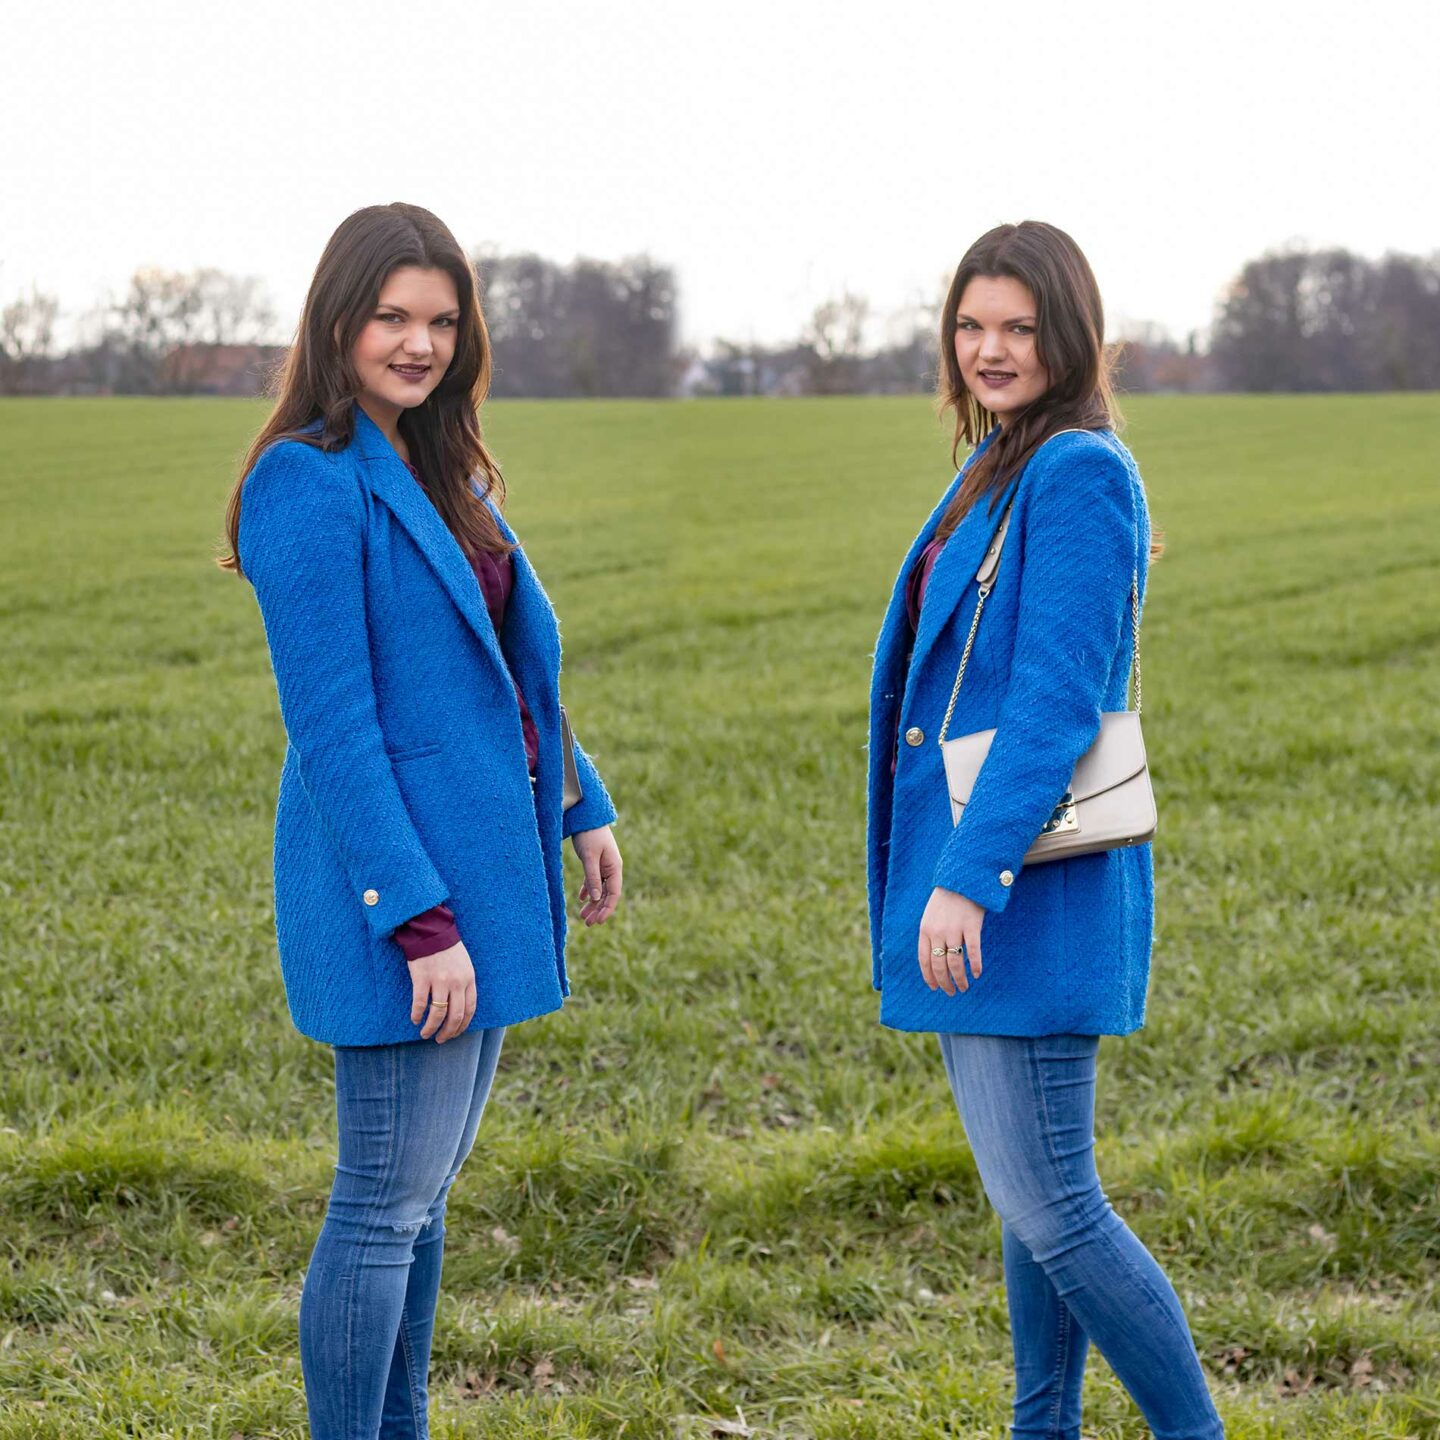 Blauer Tweed Blazer als Keypiece für einen Frühlingslook mit verschiedenen Blautönen